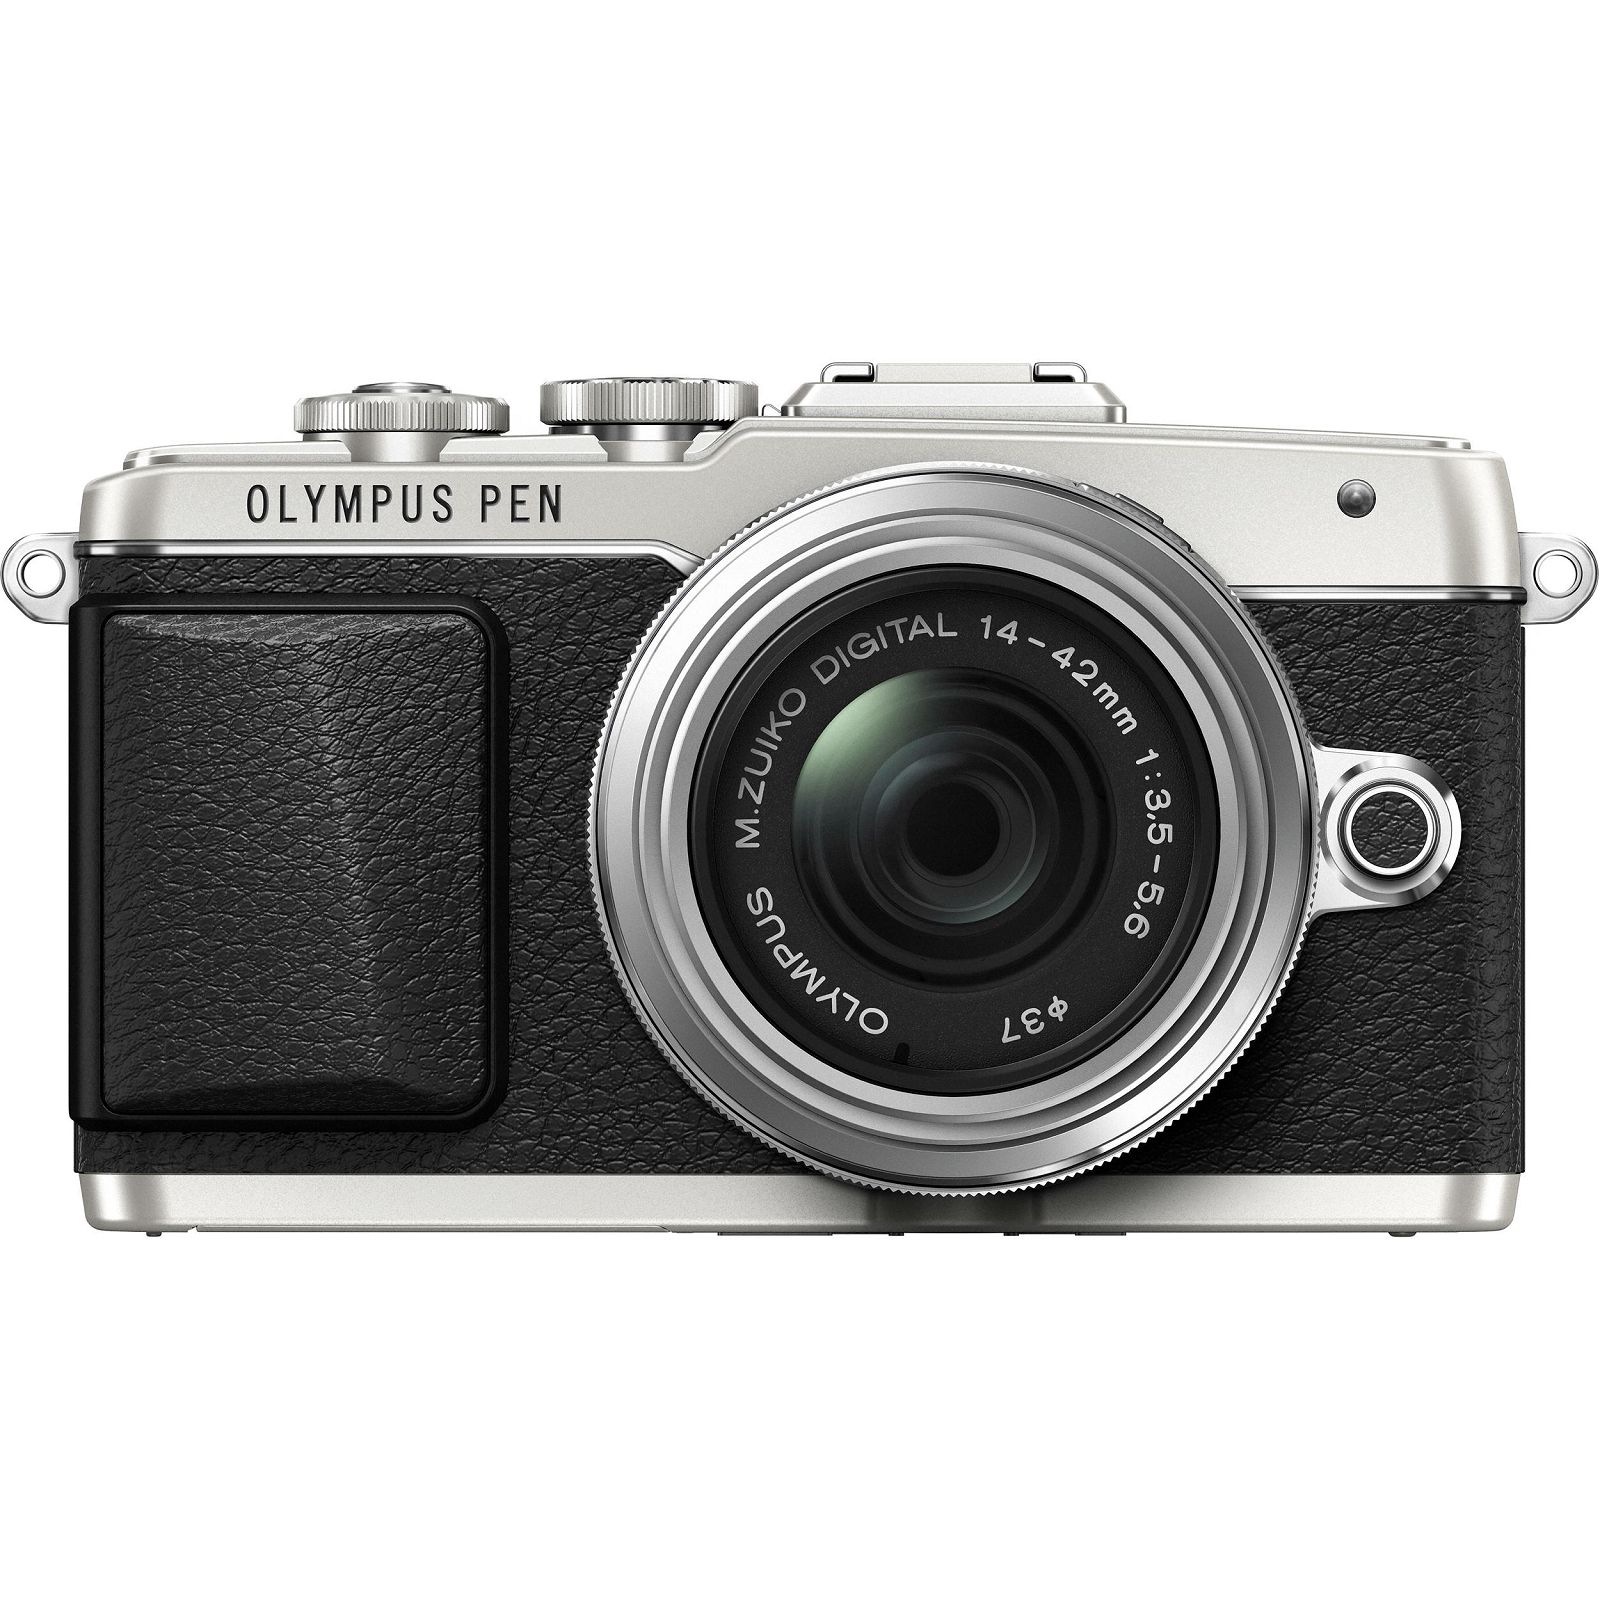 Olympus E-PL7 + 14-42mm Pancake Zoom Kit slv/slv E-PL7 silver + EZ-M1442EZ silver - incl. Charger & Battery 14-42 Micro Four Thirds MFT - PEN Camera digitalni fotoaparat V205073SE001